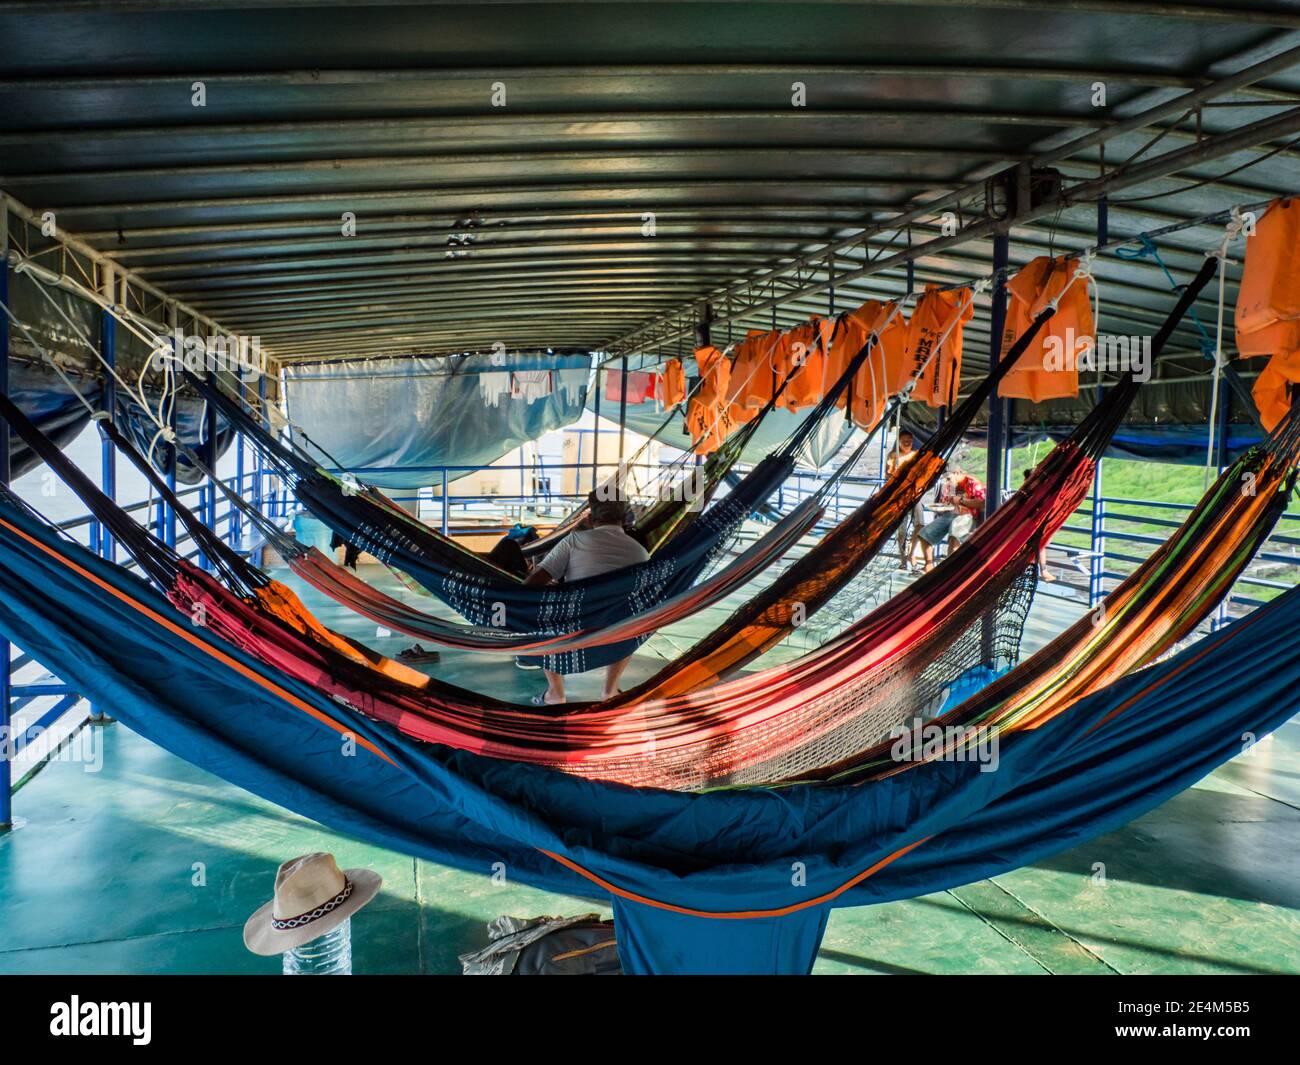 Amazon River, Peru - 19. Sep 2019: Viele schöne, bunte Hängematten auf dem  Frachtschiff. Amazonien, Weg von Santa Rosa nach Iquitos. Amazonas, Peru  Stockfotografie - Alamy